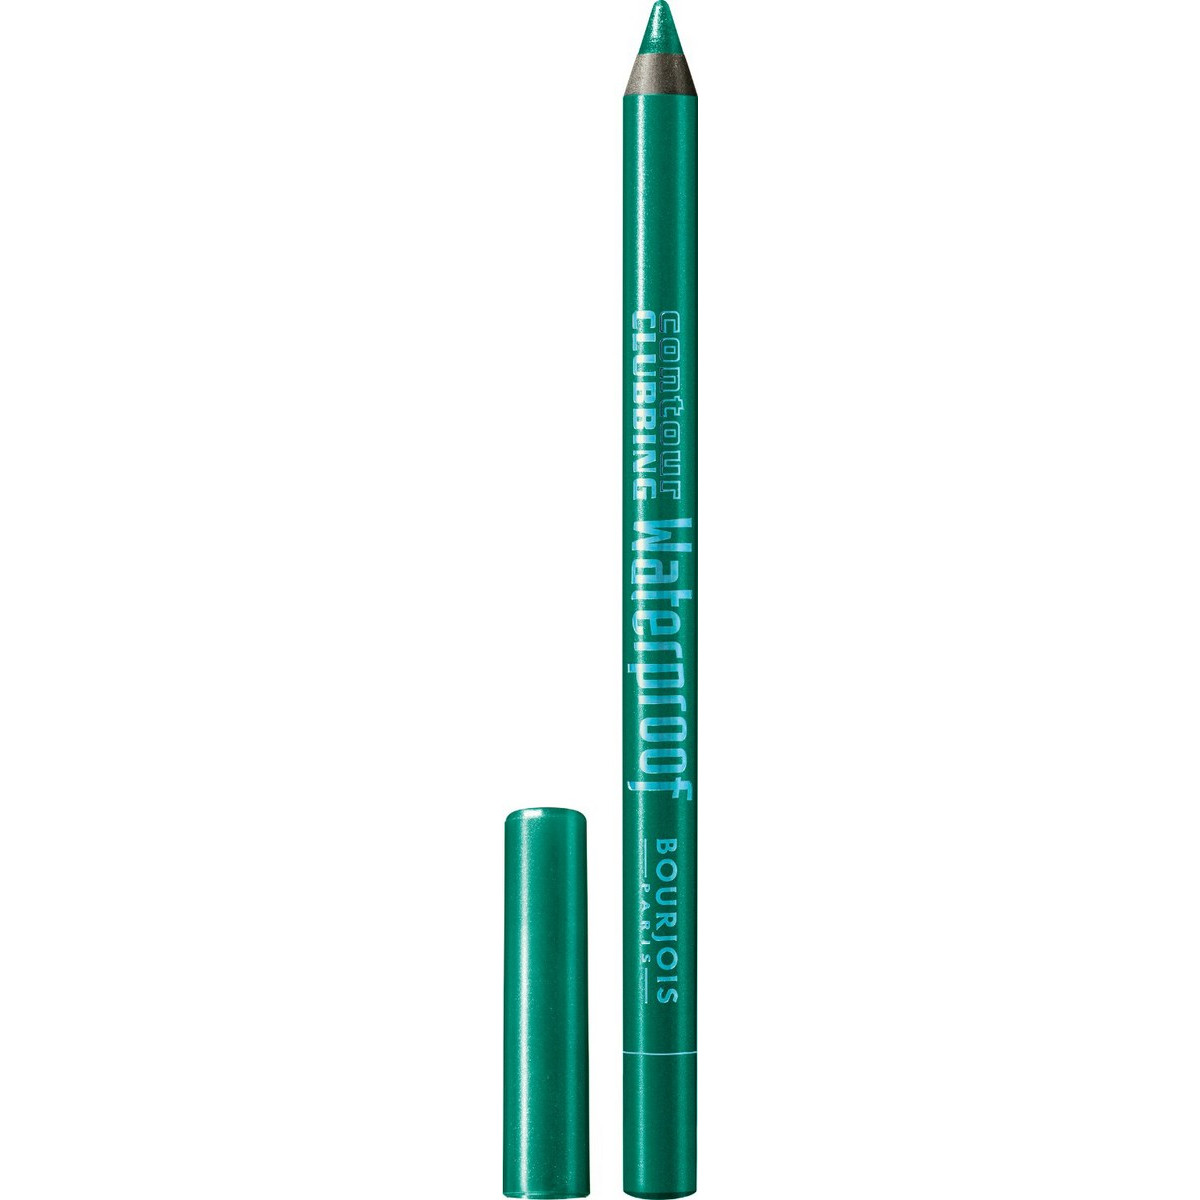 Bourjois Contour Clubbing Waterproof Eye Pencil - 50 Loving Green (1,2gr)